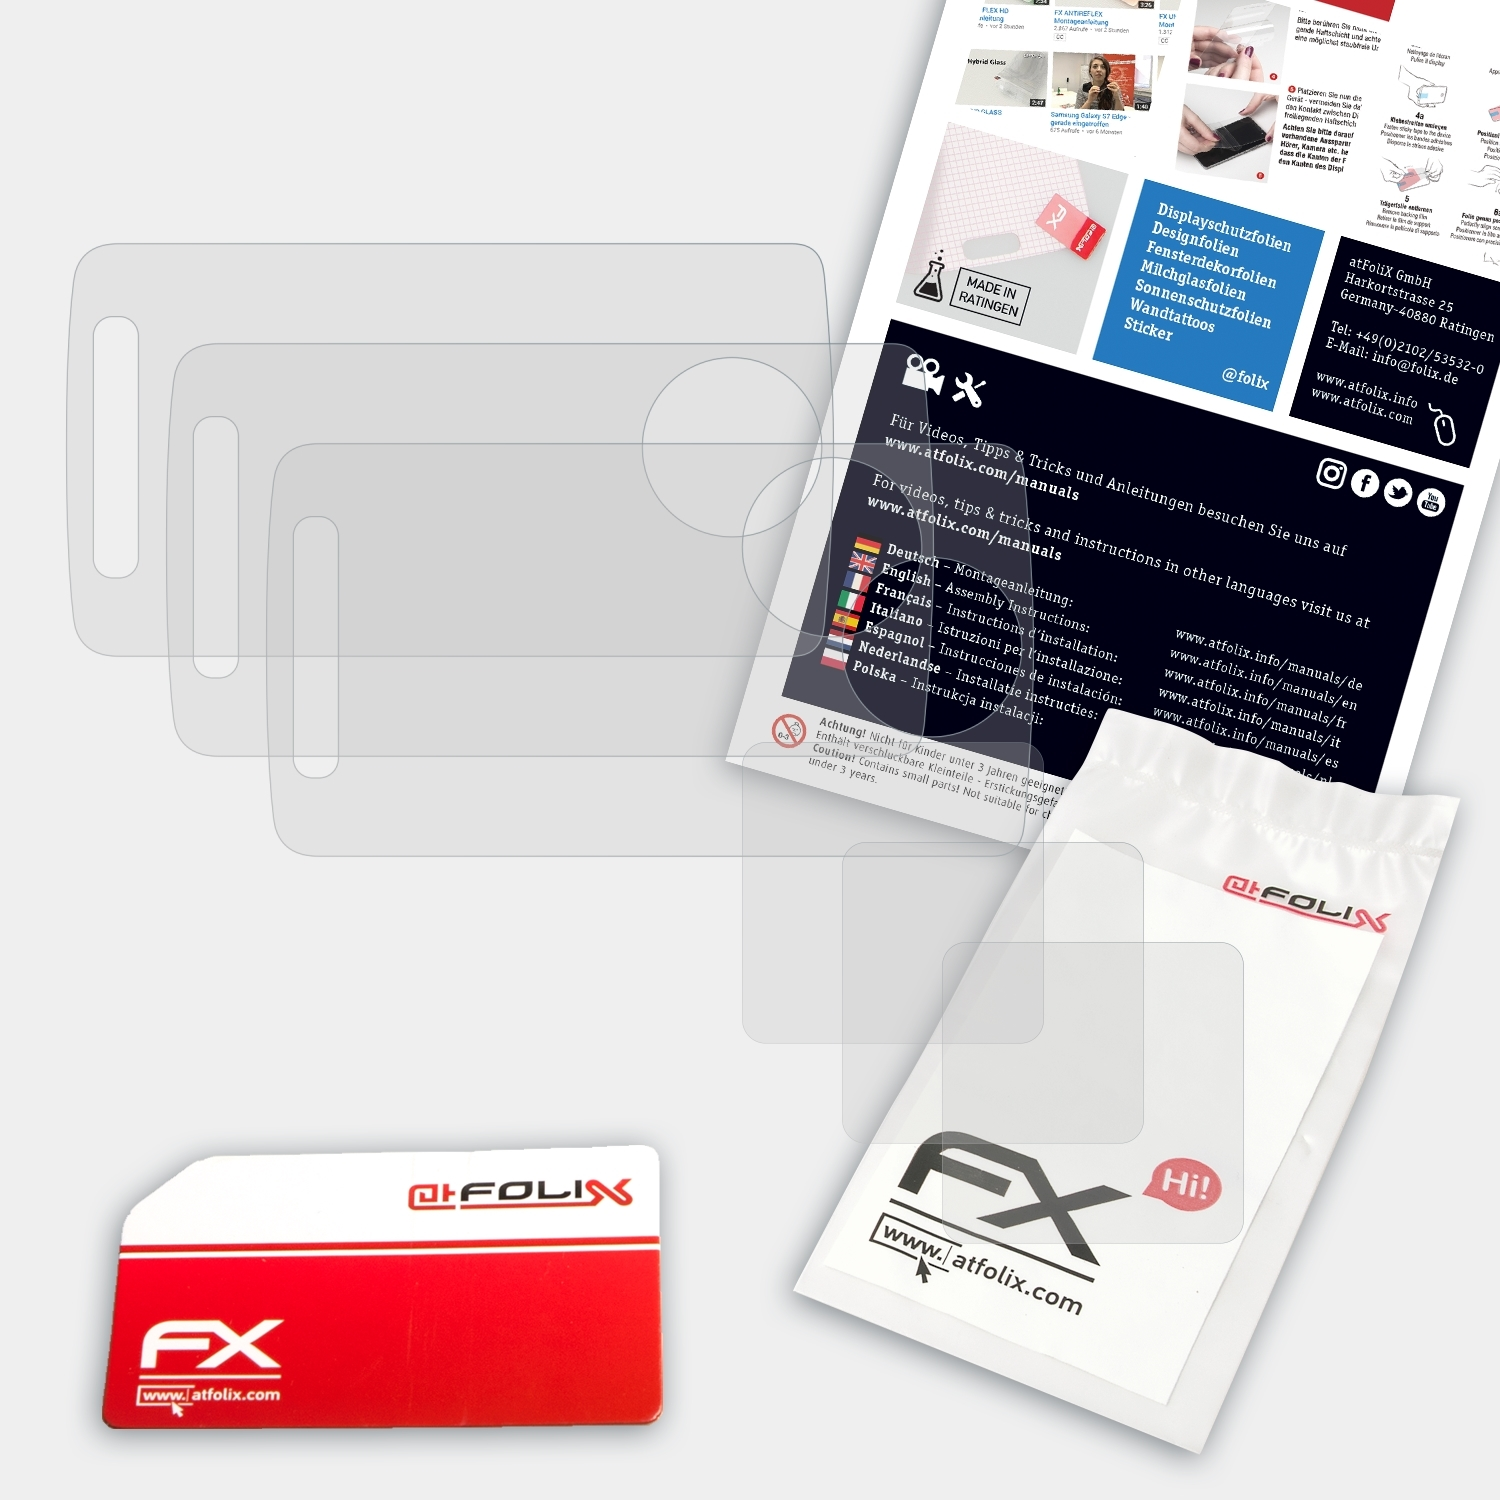 ATFOLIX 3x FX-Antireflex Displayschutz(für Sony RM-LVR2V)